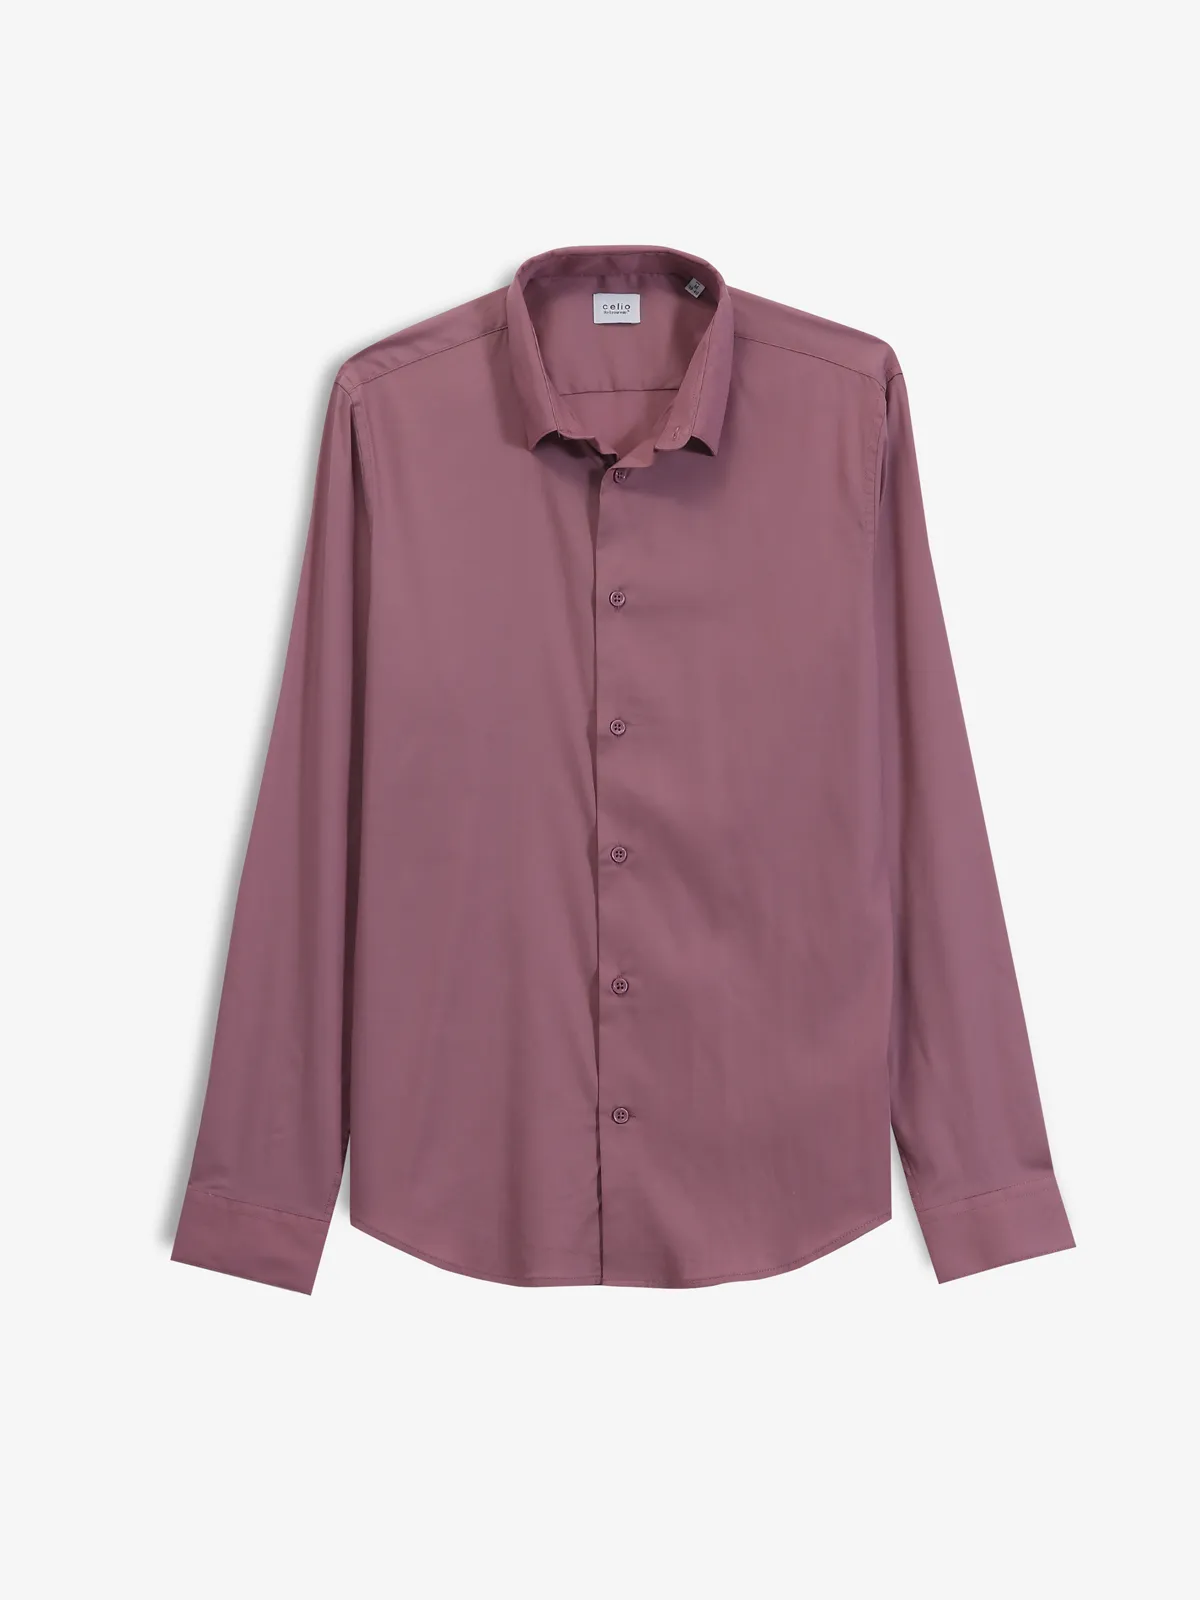 CELIO mauve plain cotton shirt